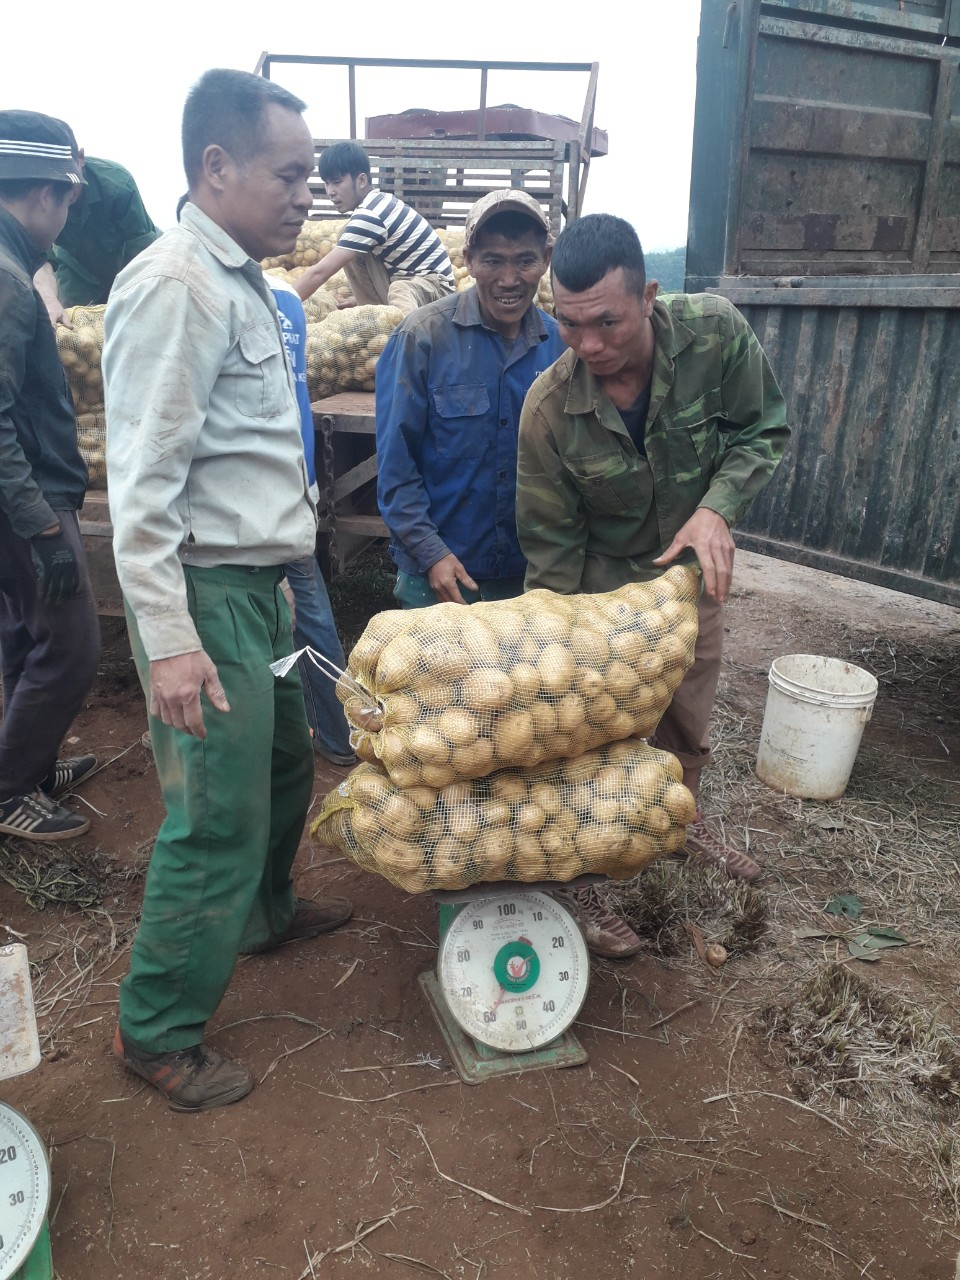 Hiệu quả mô hình liên kết sản xuất khoai tây gắn với tiêu thụ sản phẩm trên đất đỏ bazan tại thị xã Thái Hòa vụ Đông năm 2021